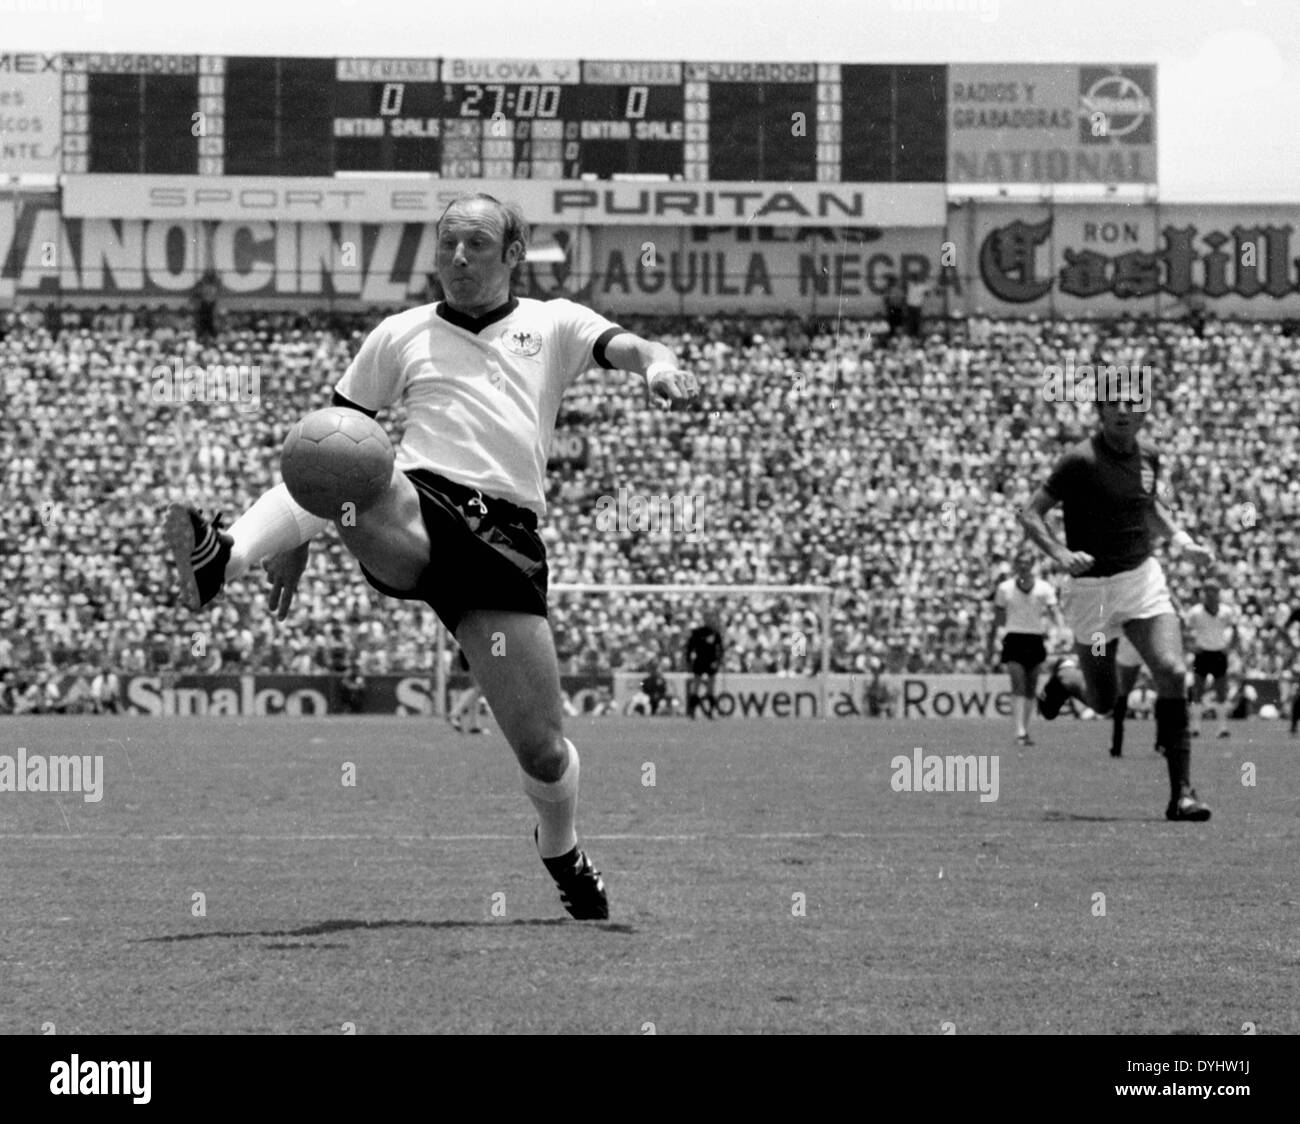 14.06.1970. Le Mexique. Finales de Football Coupe du monde 1970 : l'Allemagne contre l'Angleterre s'est terminée par un score de 3:2 dans Leon. Uwe Virginia Afflerbach (Ger) en action. Banque D'Images